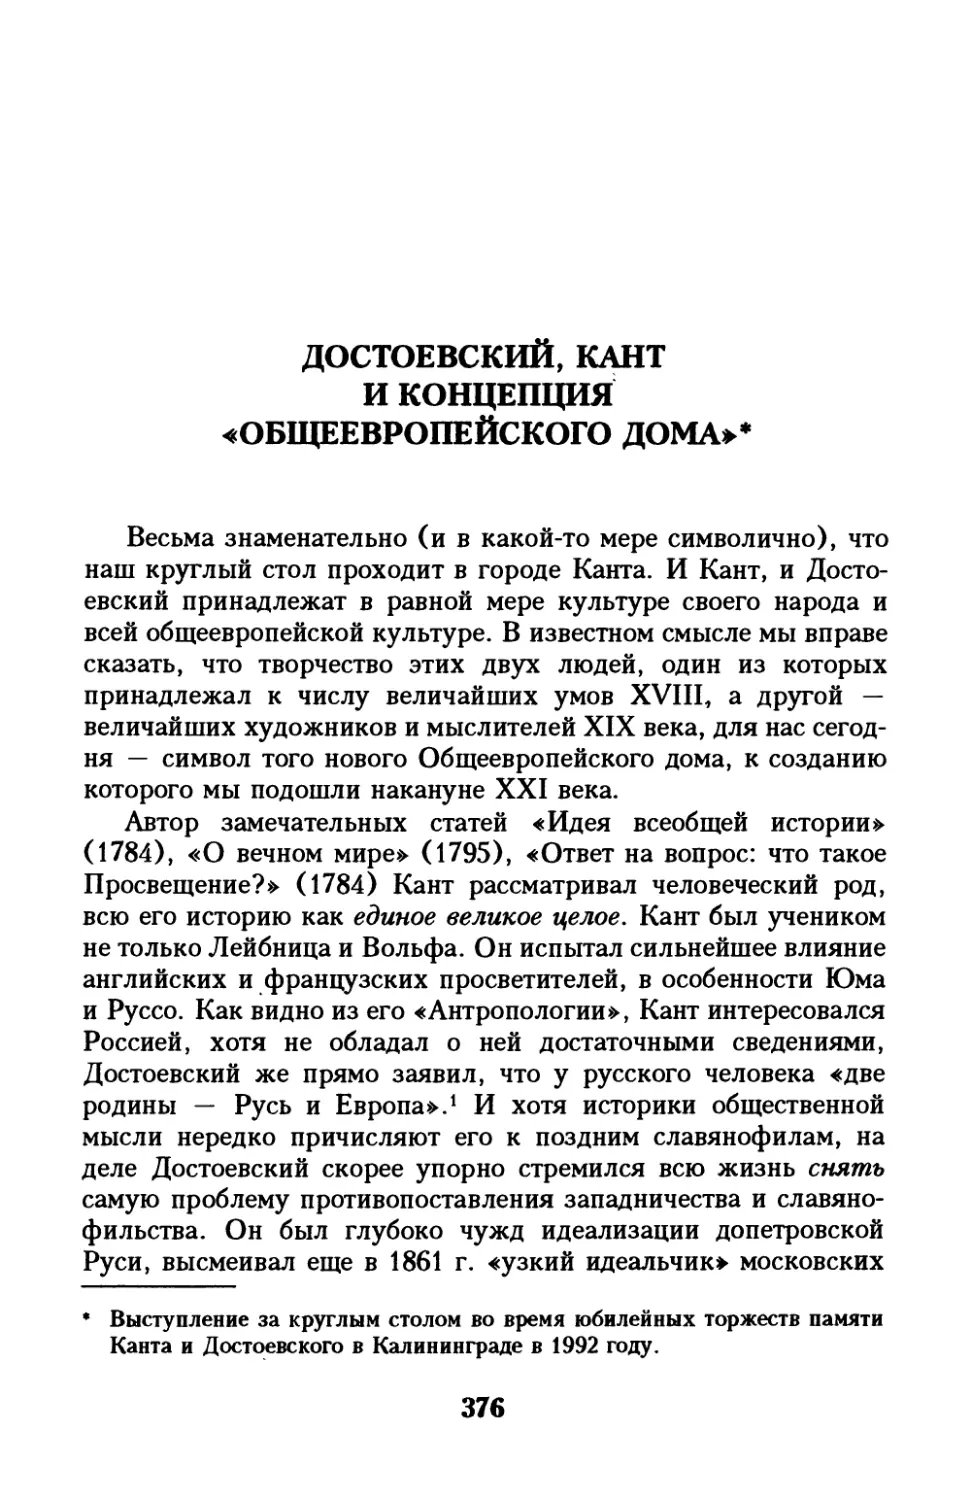 Достоевский, Кант и концепция «Общеевропейского дома»